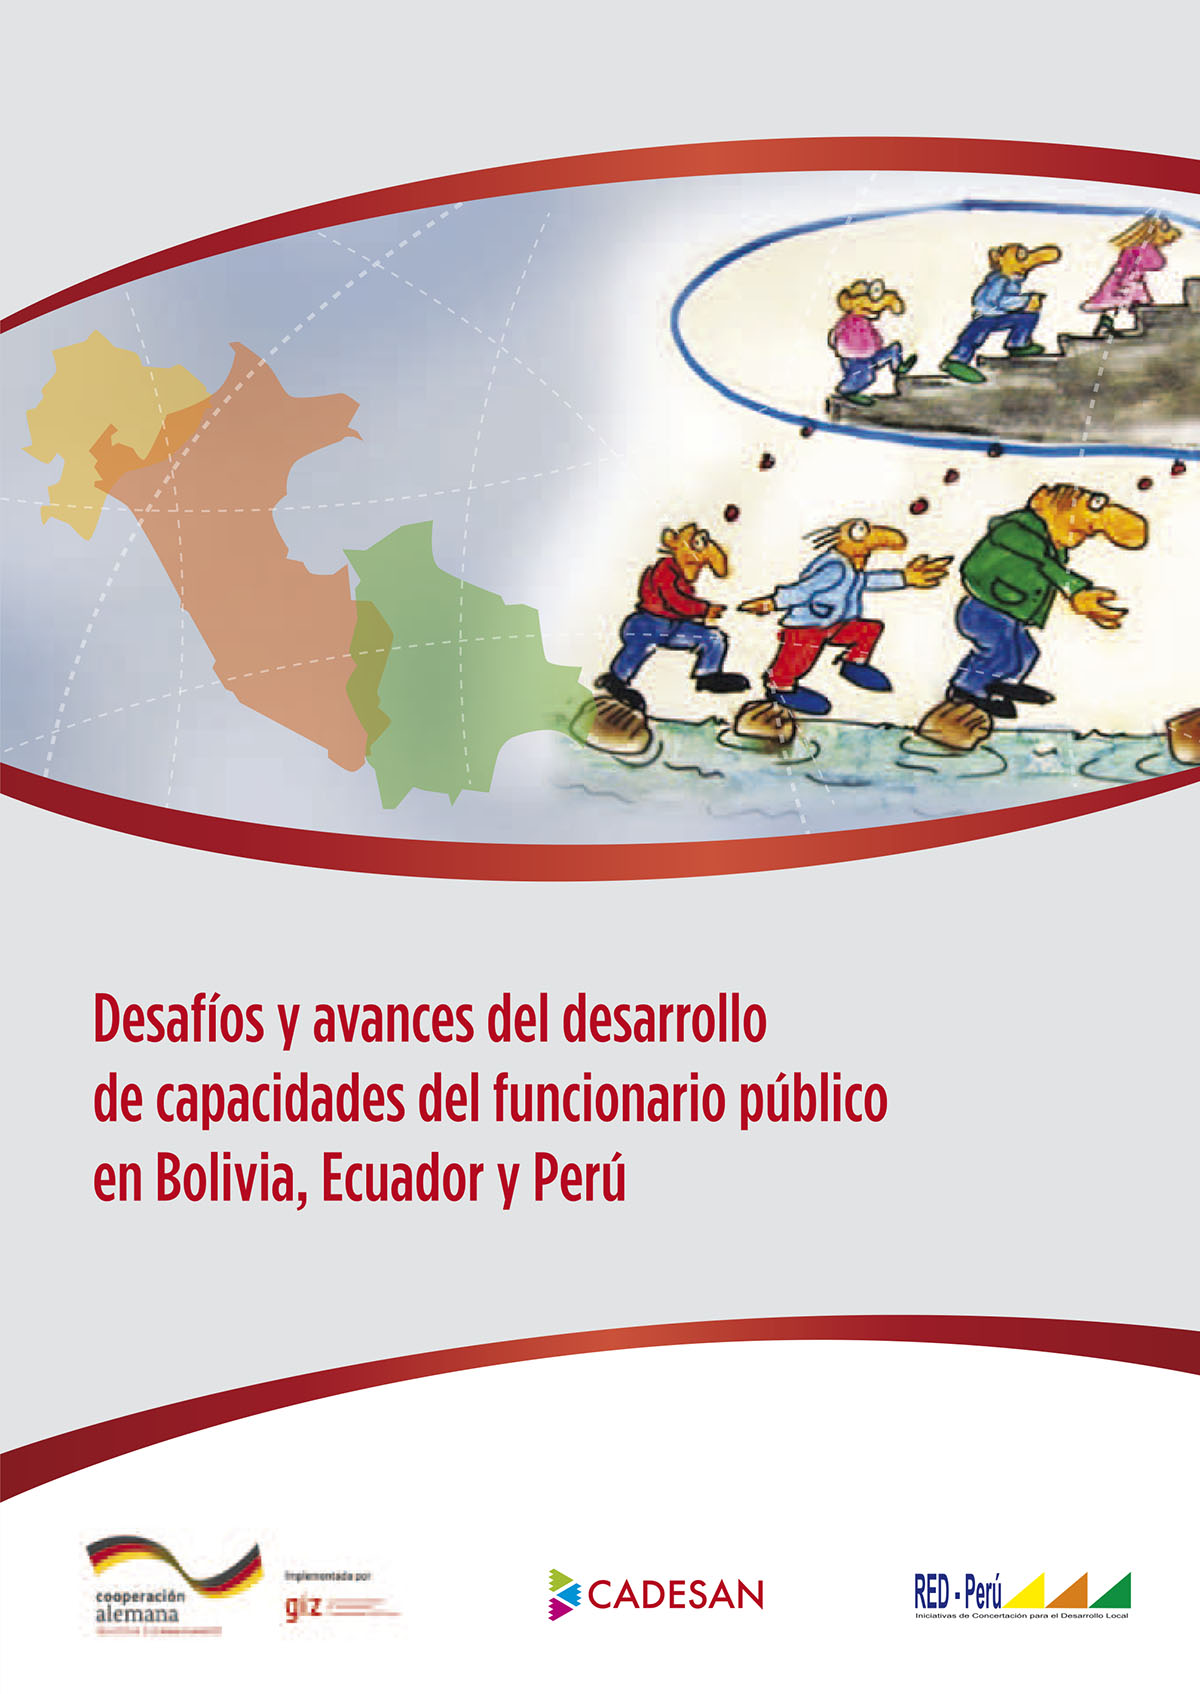 Desafíos y avances del desarrollo de capacidades del funcionario público en Bolivia, Ecuador y Perú